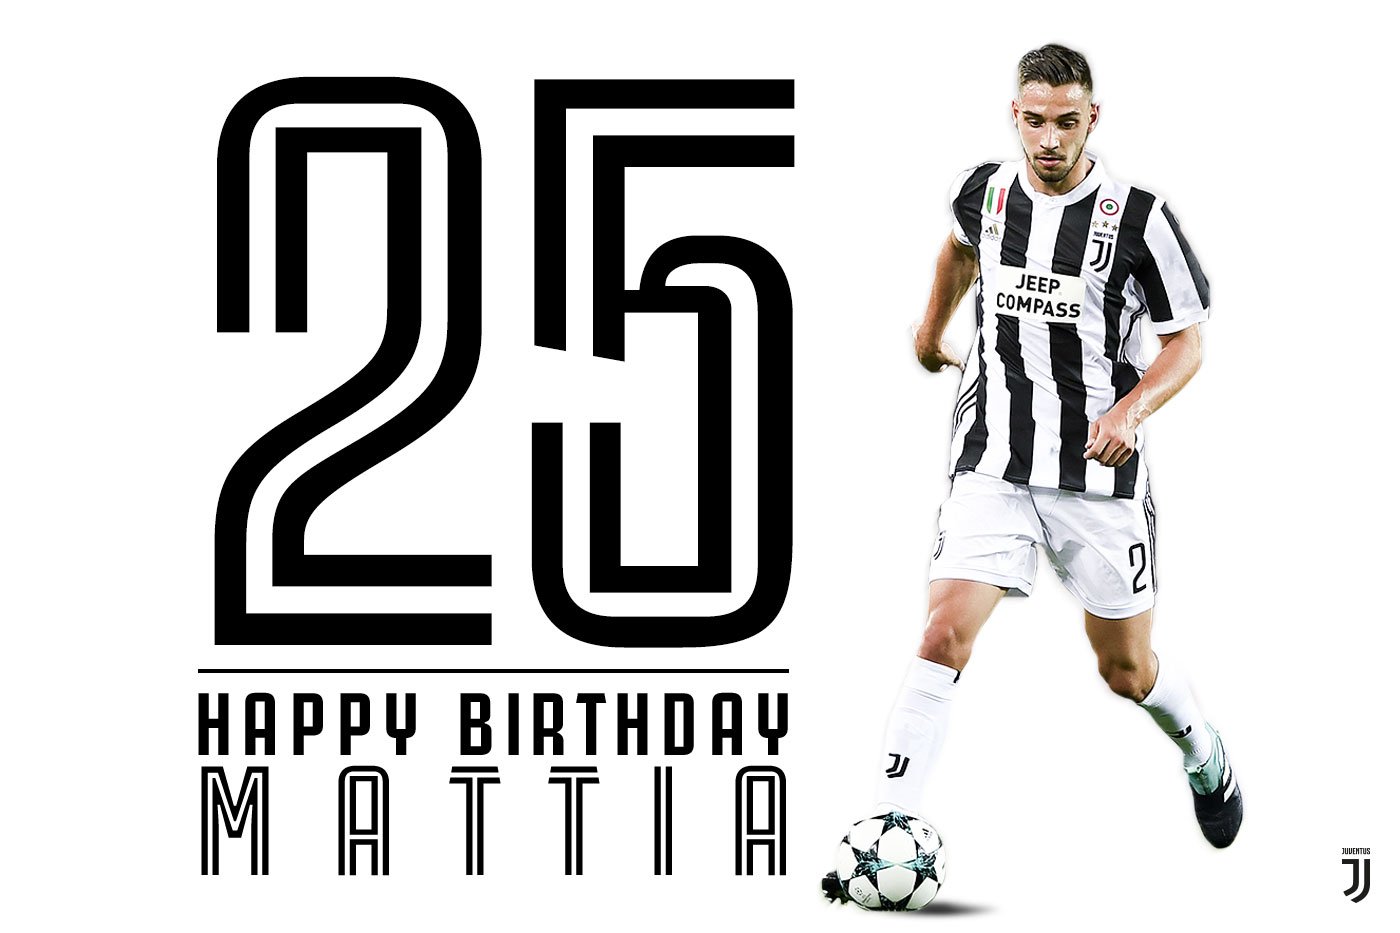 Event:Happy birthday, Mattia!: Mattia De Sciglio celebrates his 25th birthday today  